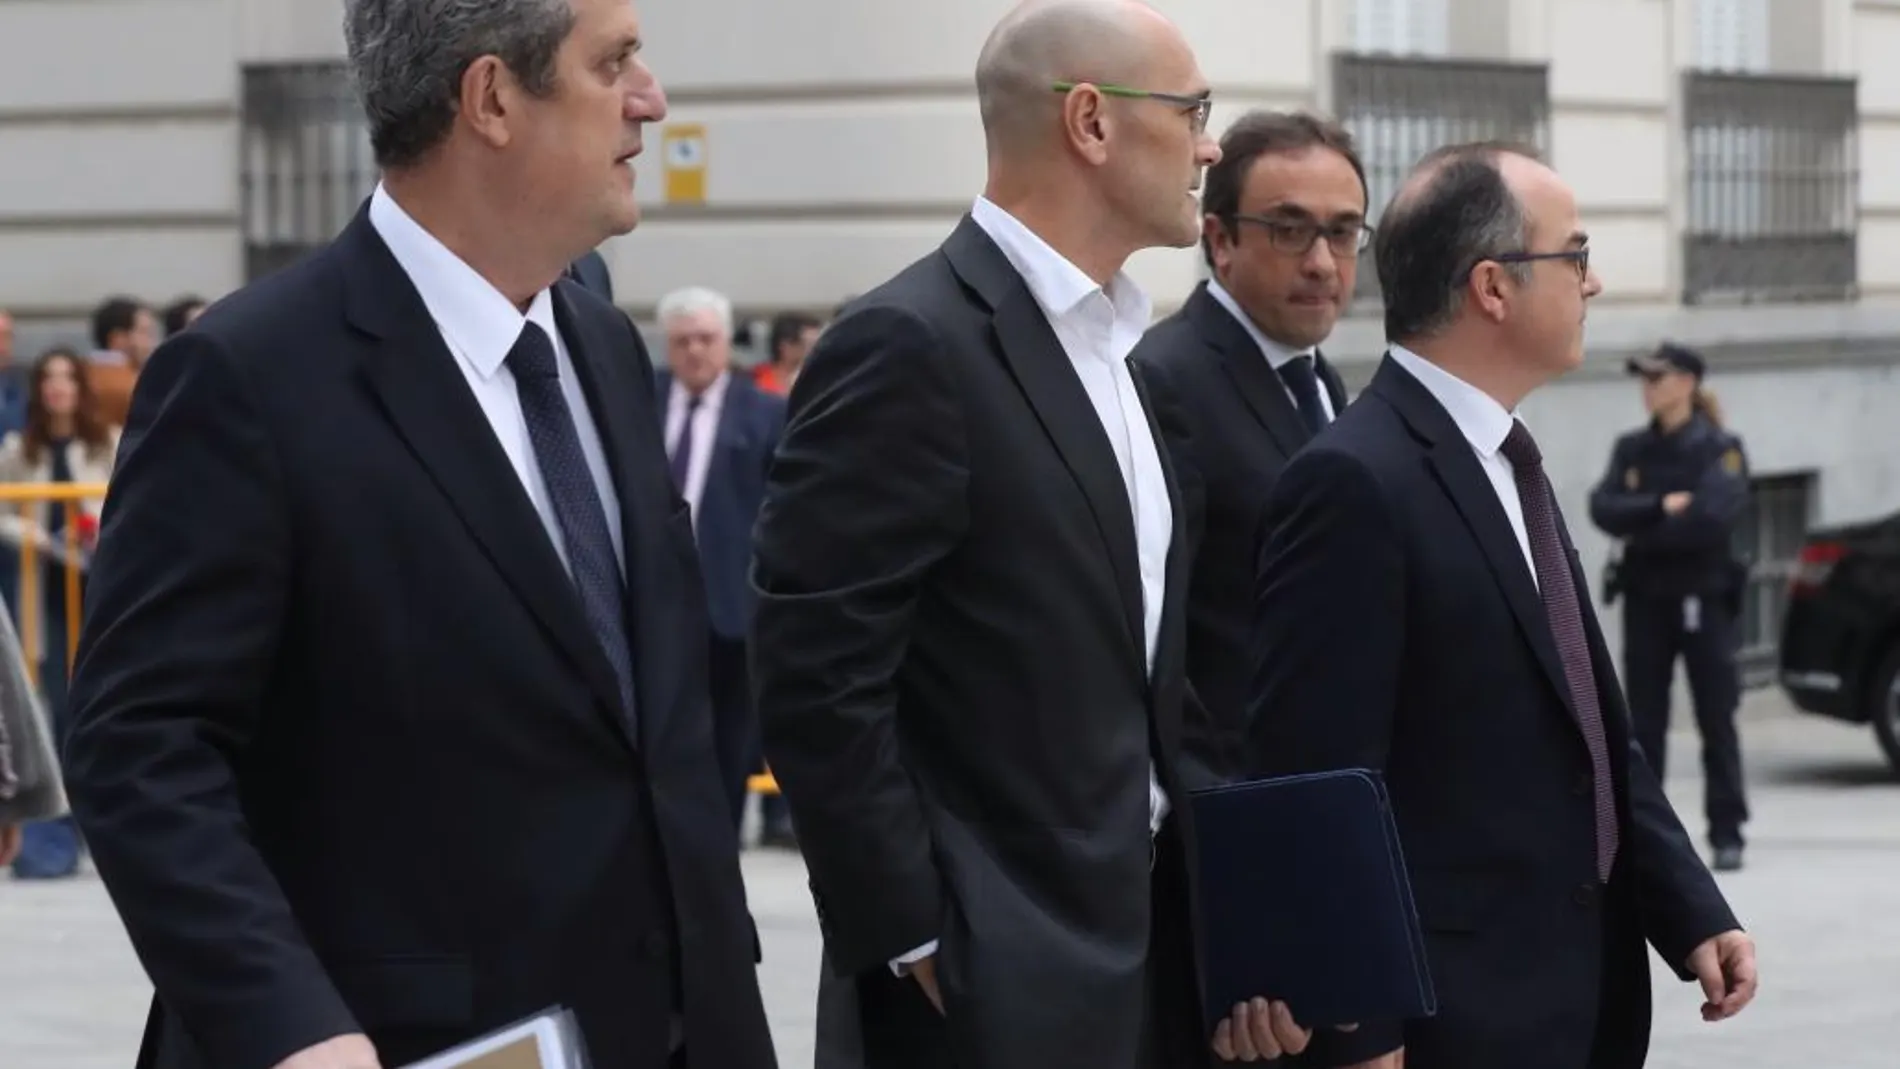 Los exconsejeros de la Generalitat de Cataluña Joaquim Forn (Interior), Raul Romeva (Exteriores), Jordi Turull (Presidencia) y Josep Rull, que permanecen en prisión.